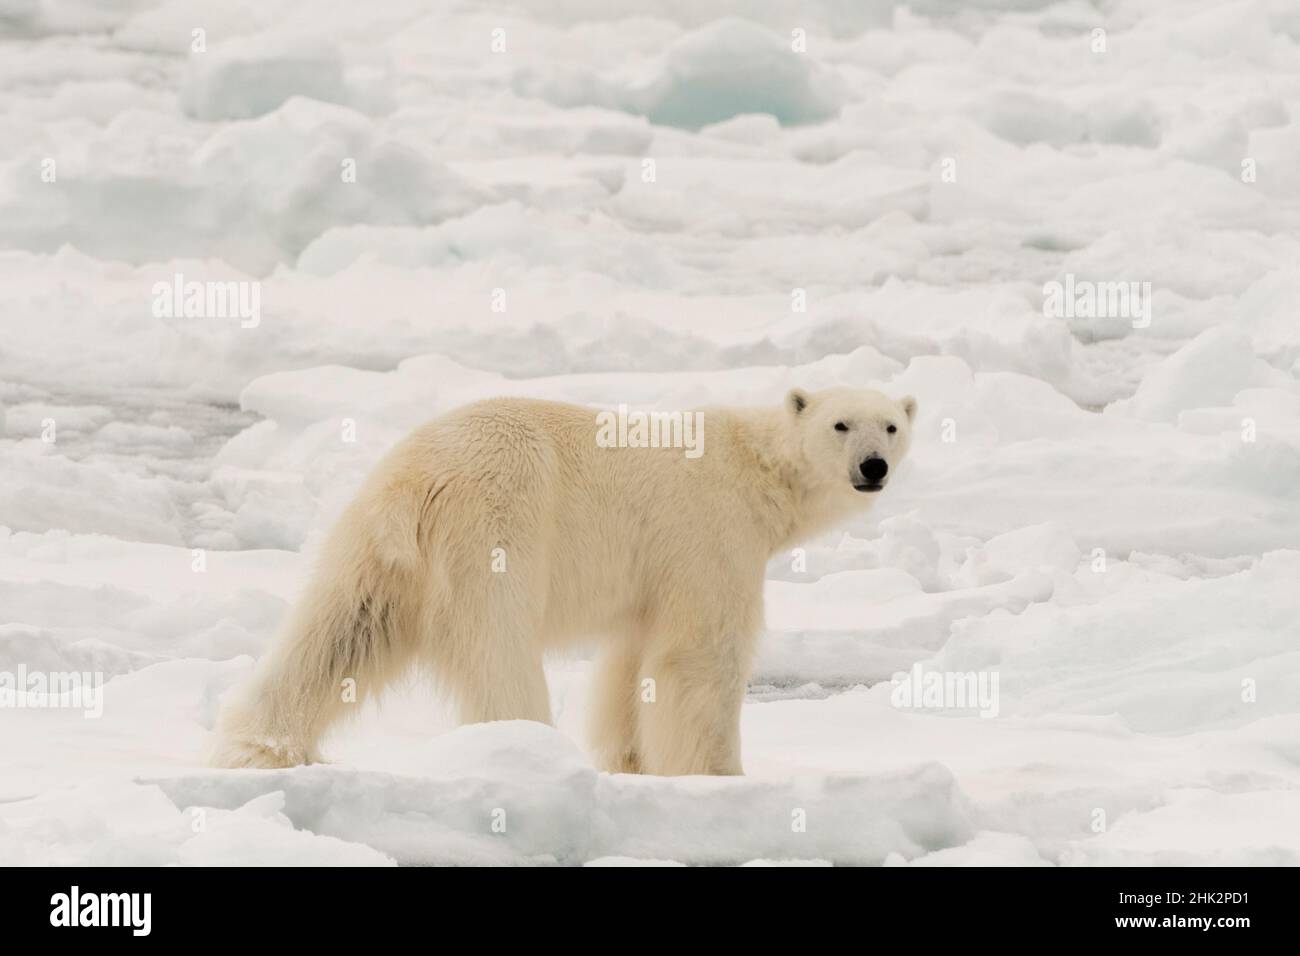 Ours polaire (Ursus maritimus), calotte glaciaire polaire, nord du Spitsbergen, Norvège. Banque D'Images